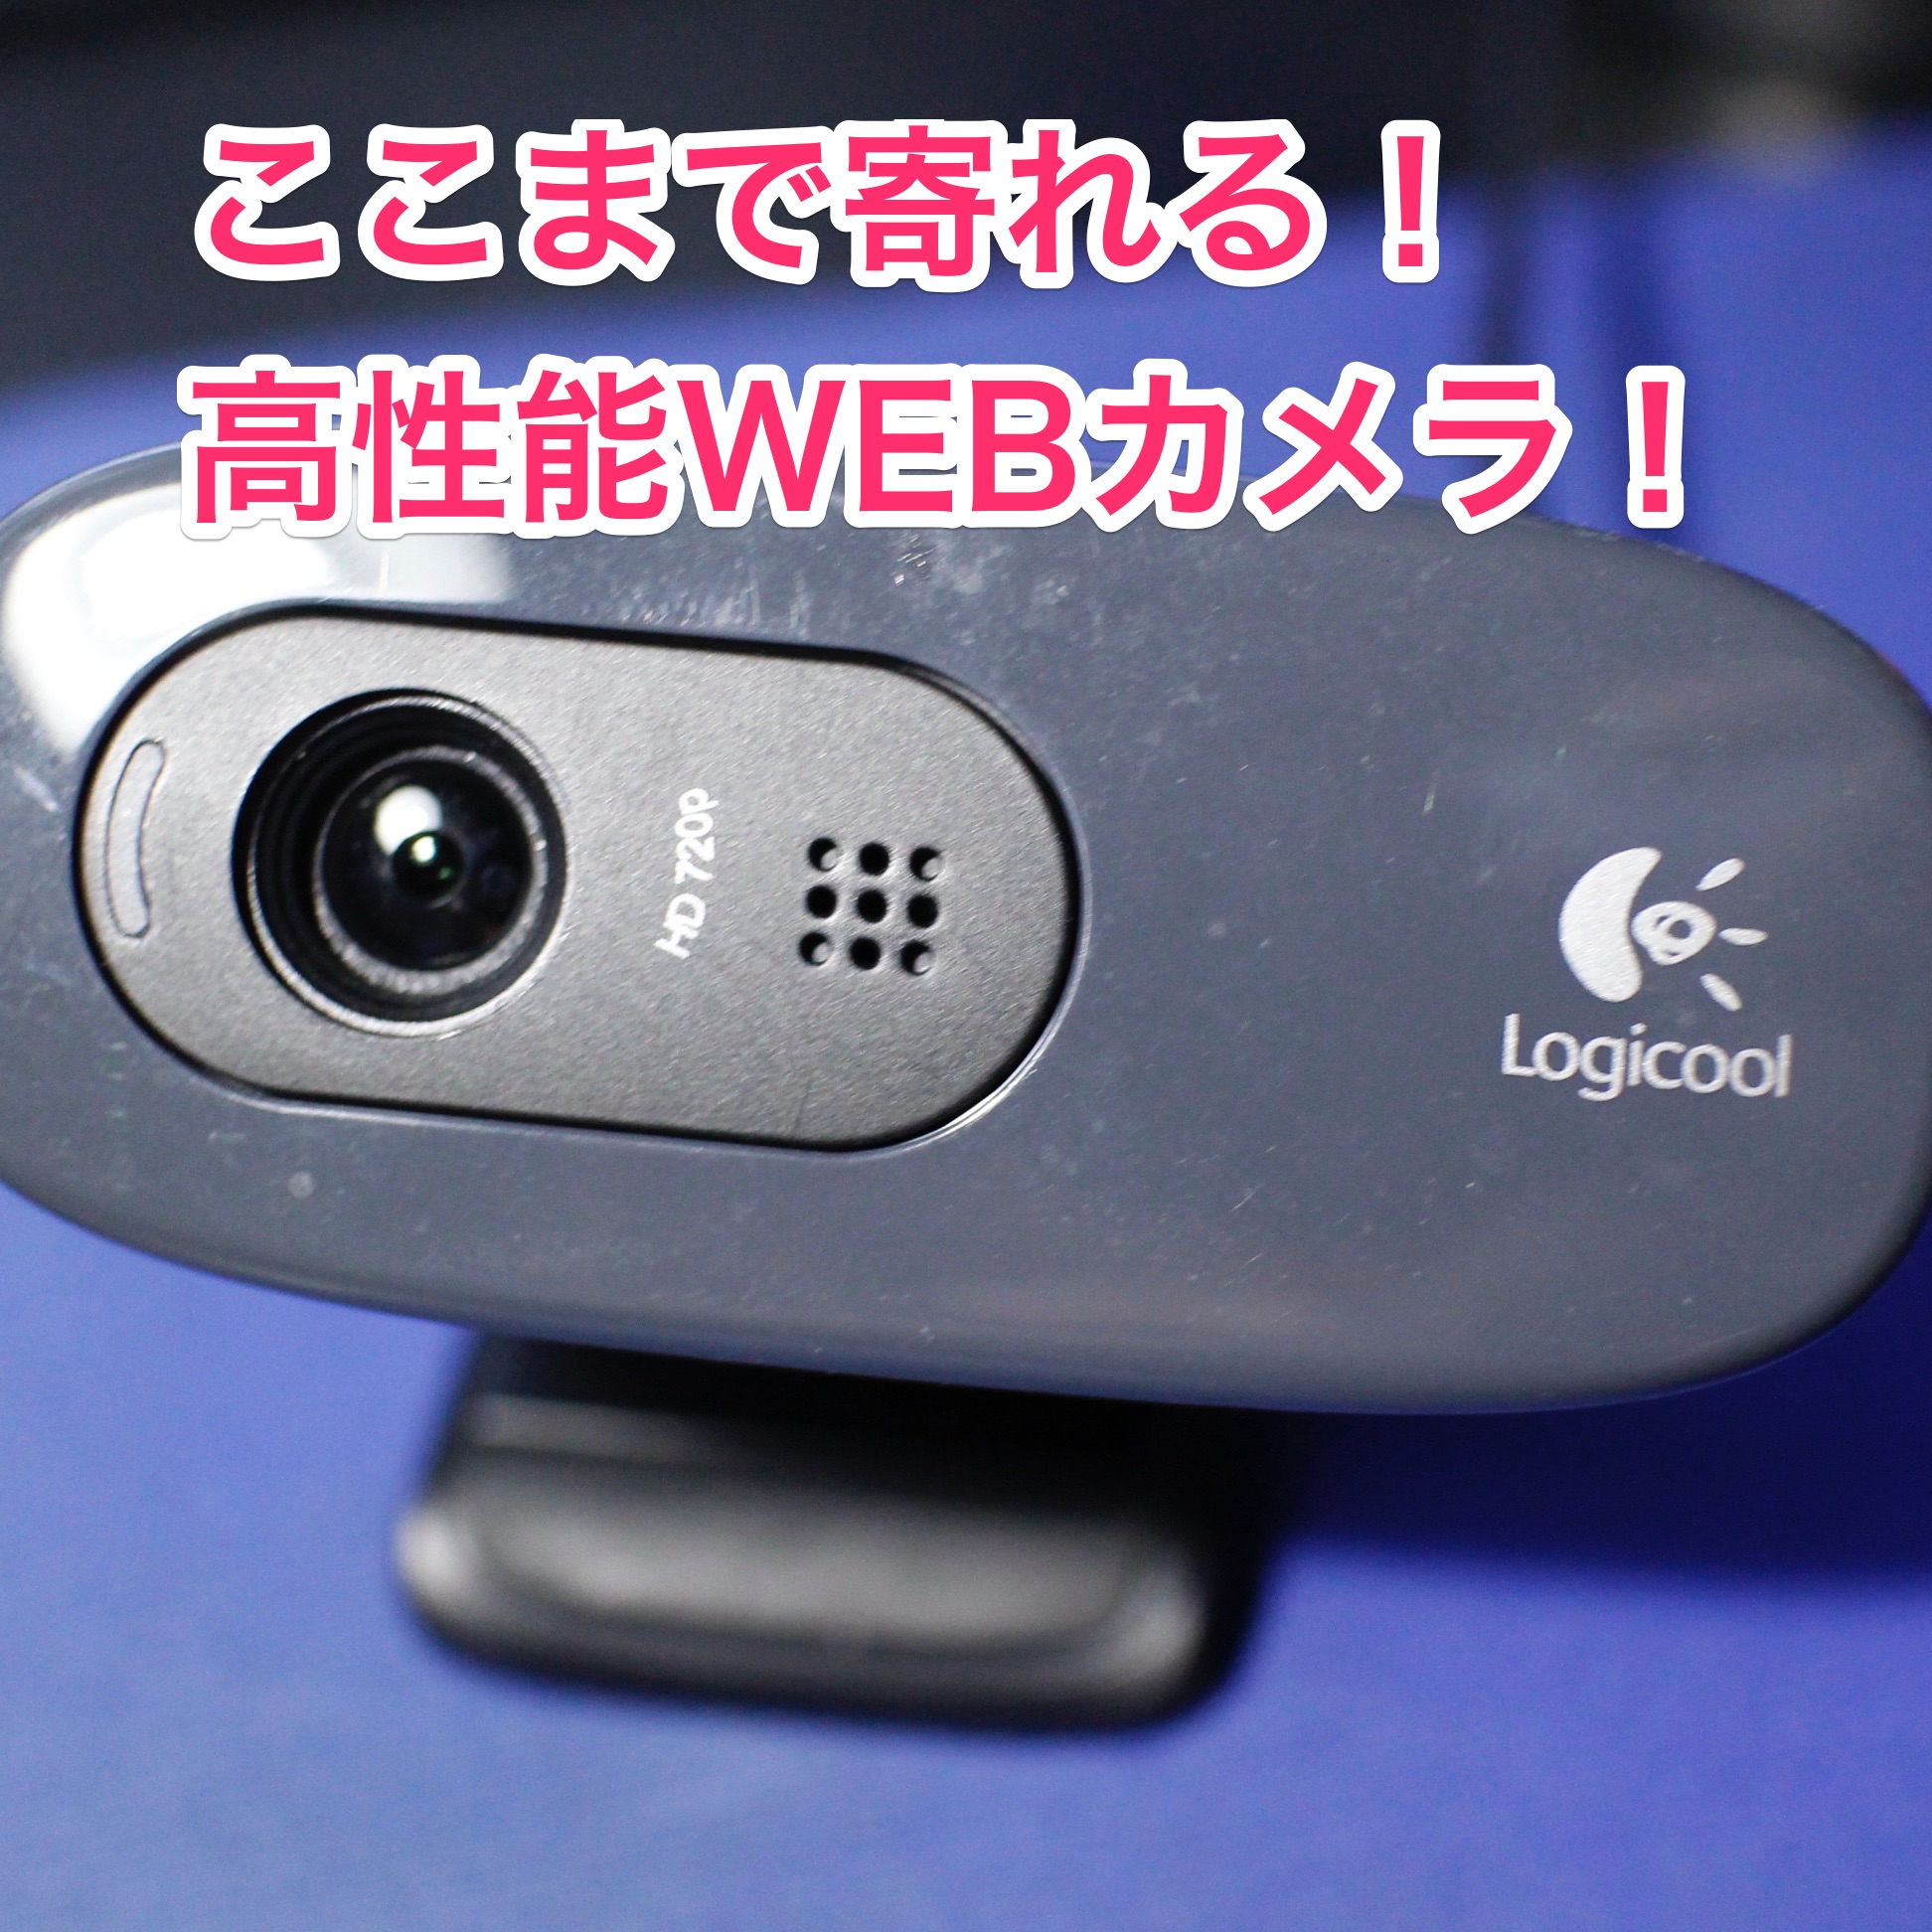 Logicool Webカメラ C270のピントを調節する方法